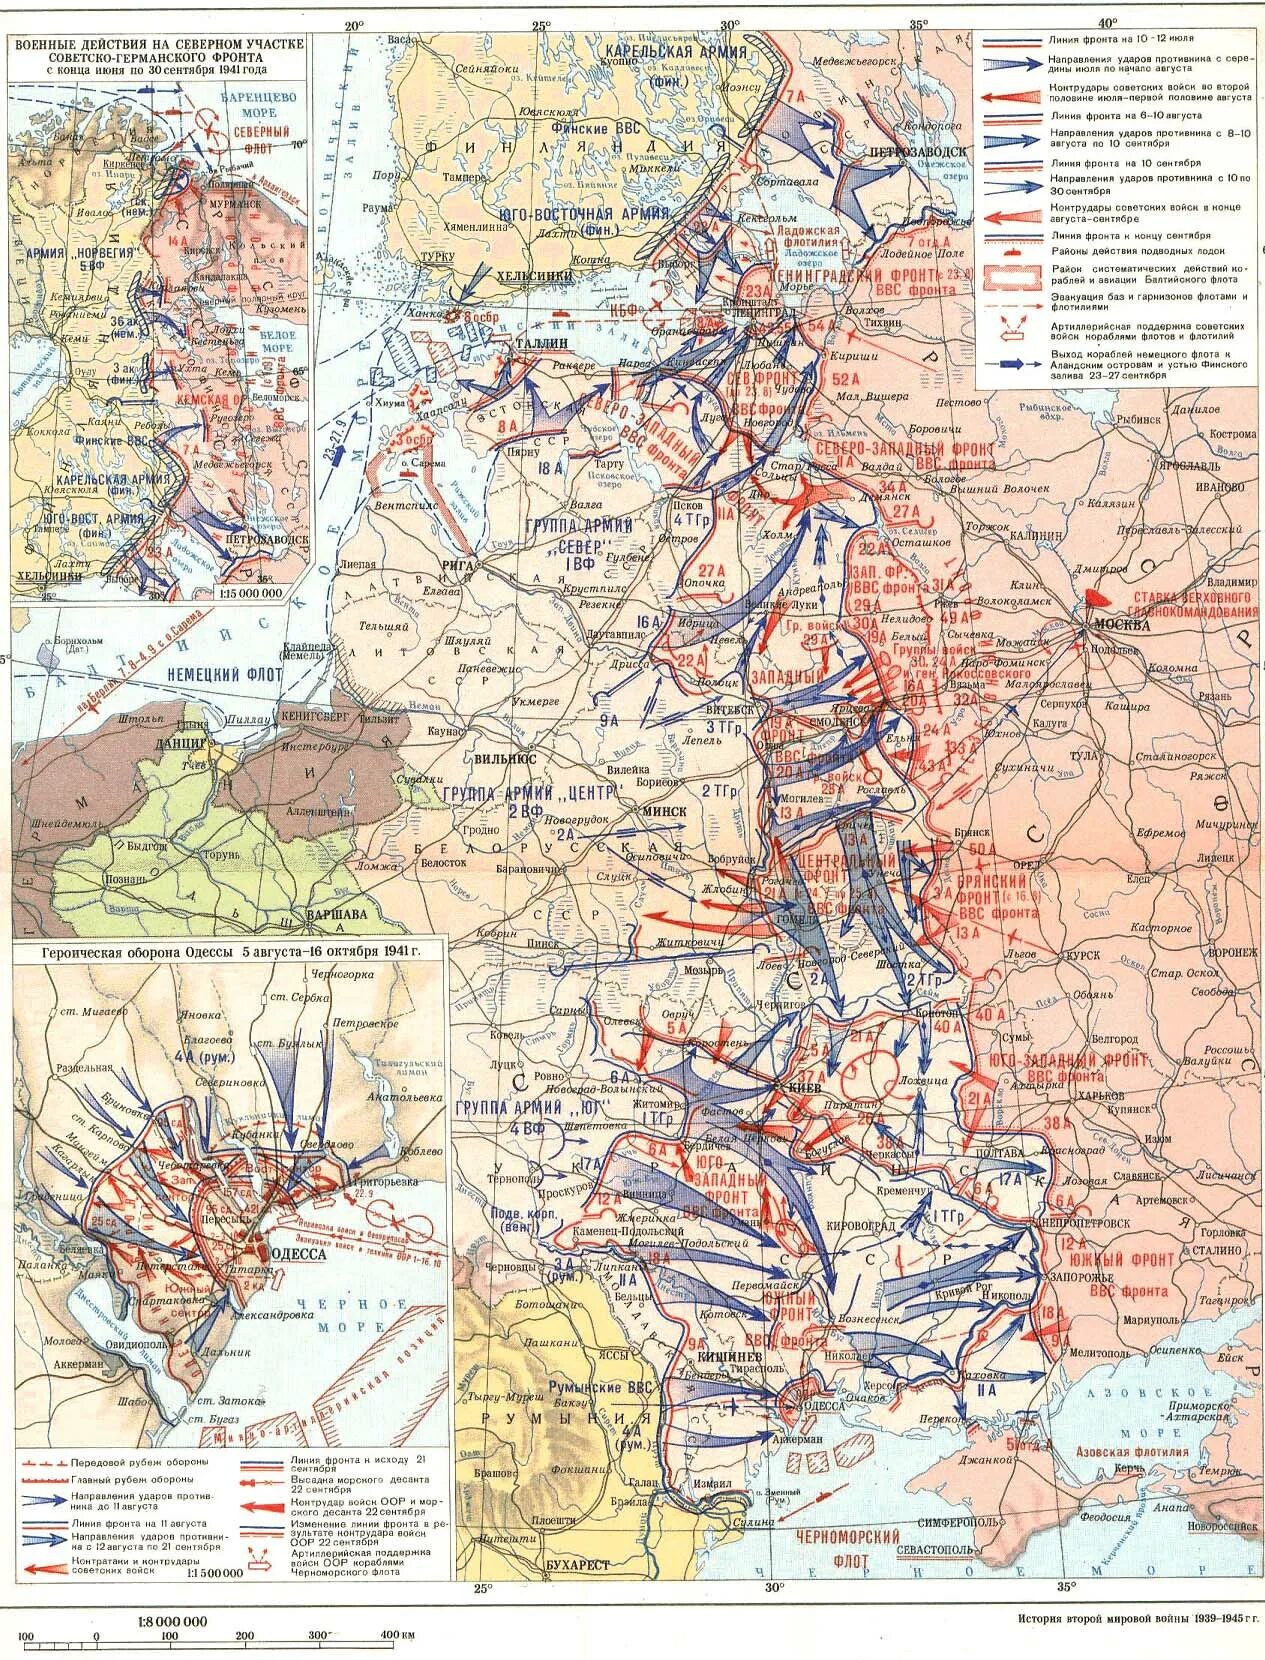 Линия фронта в 1941 году. Карта ВОВ сентябрь 1941. Карта военных действий в ВОВ В 1941 году. Линия фронта на июль 1941 года. 1 июля фронт